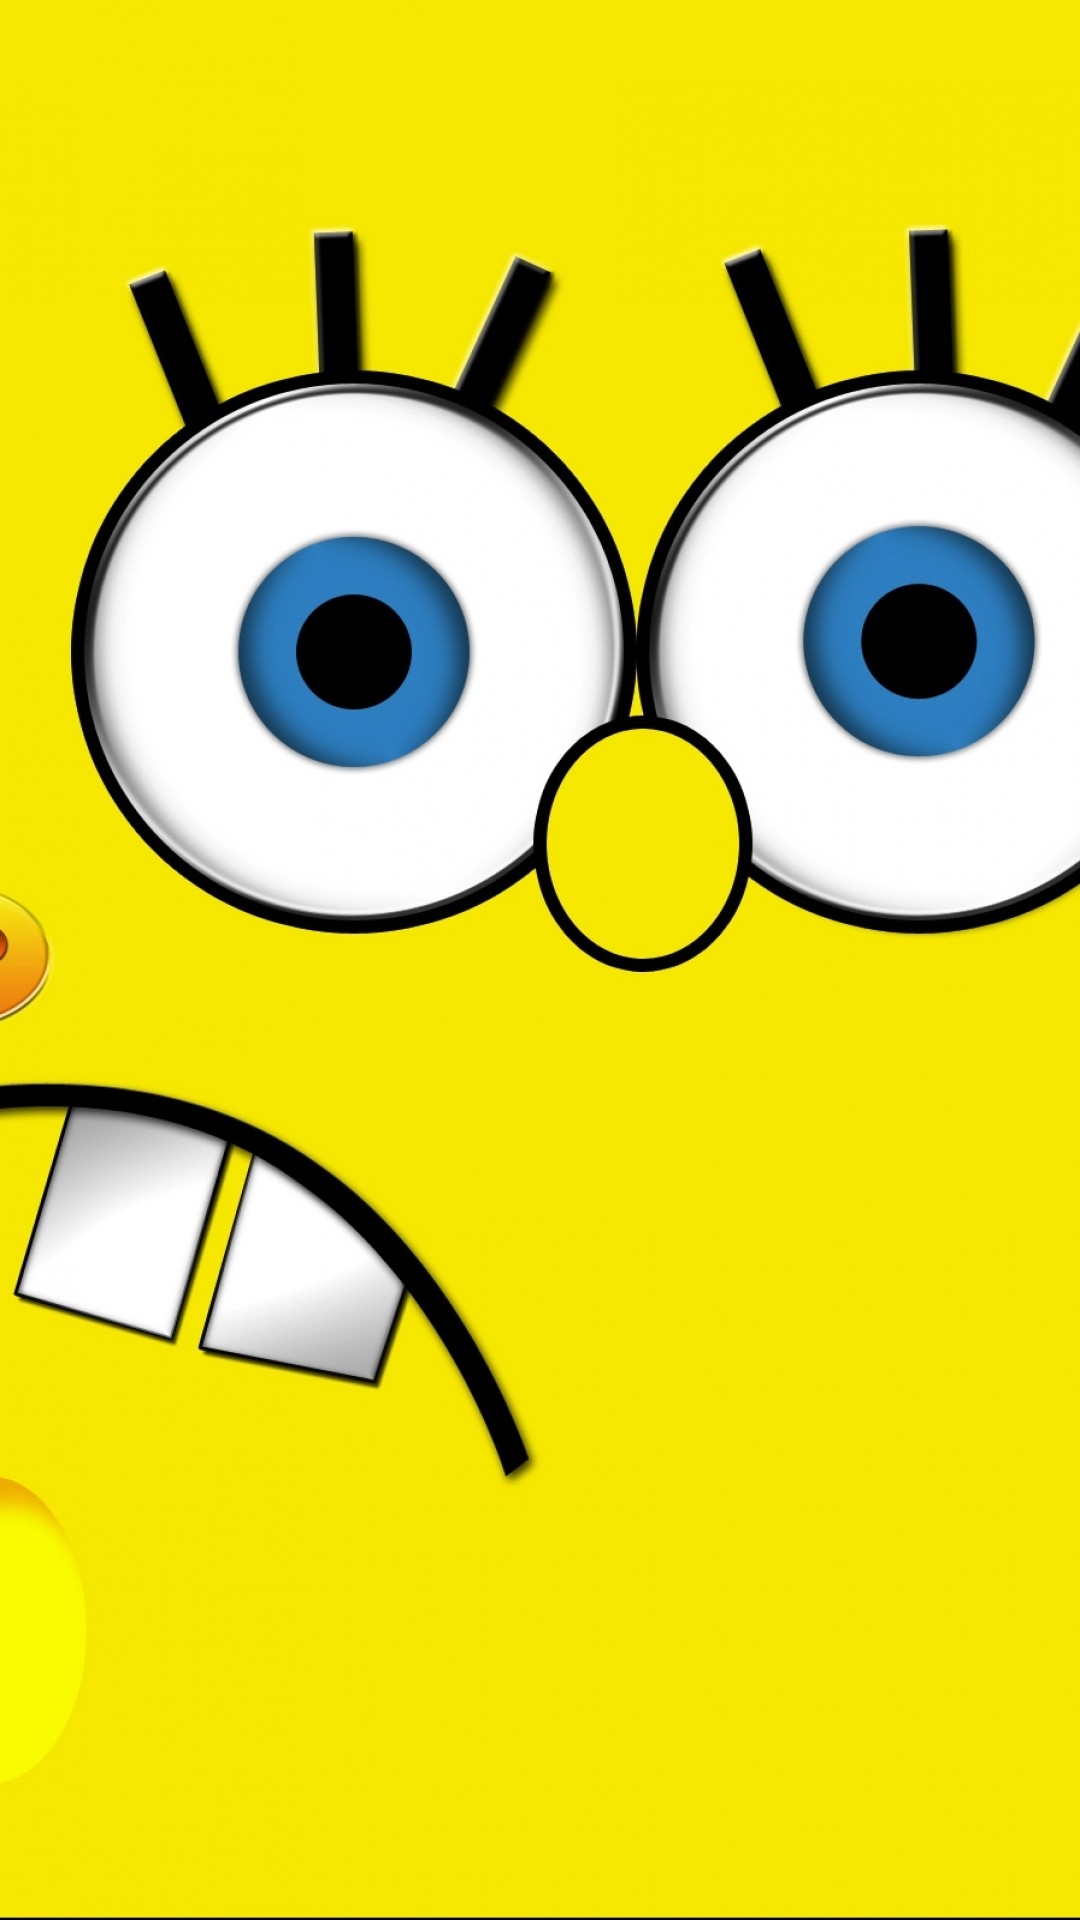 1080x1920 TV Show Spongebob Squarepants. Wallpaper 524600